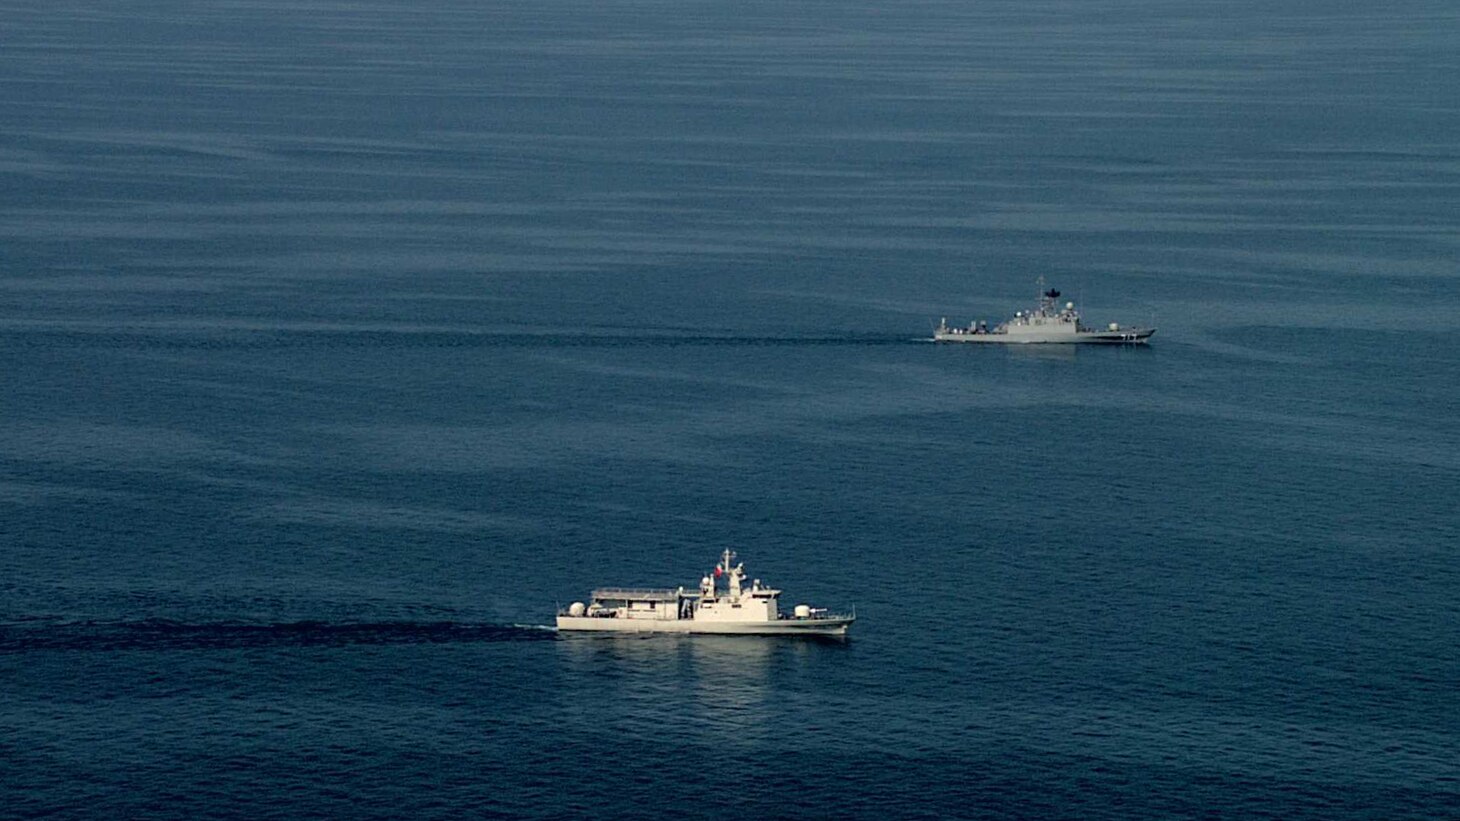 فريق عمل IMSC ينهي تمرينًا بحريًا شهريًا في الخليج العربي> البحرية الأمريكية> أخبار-قصص